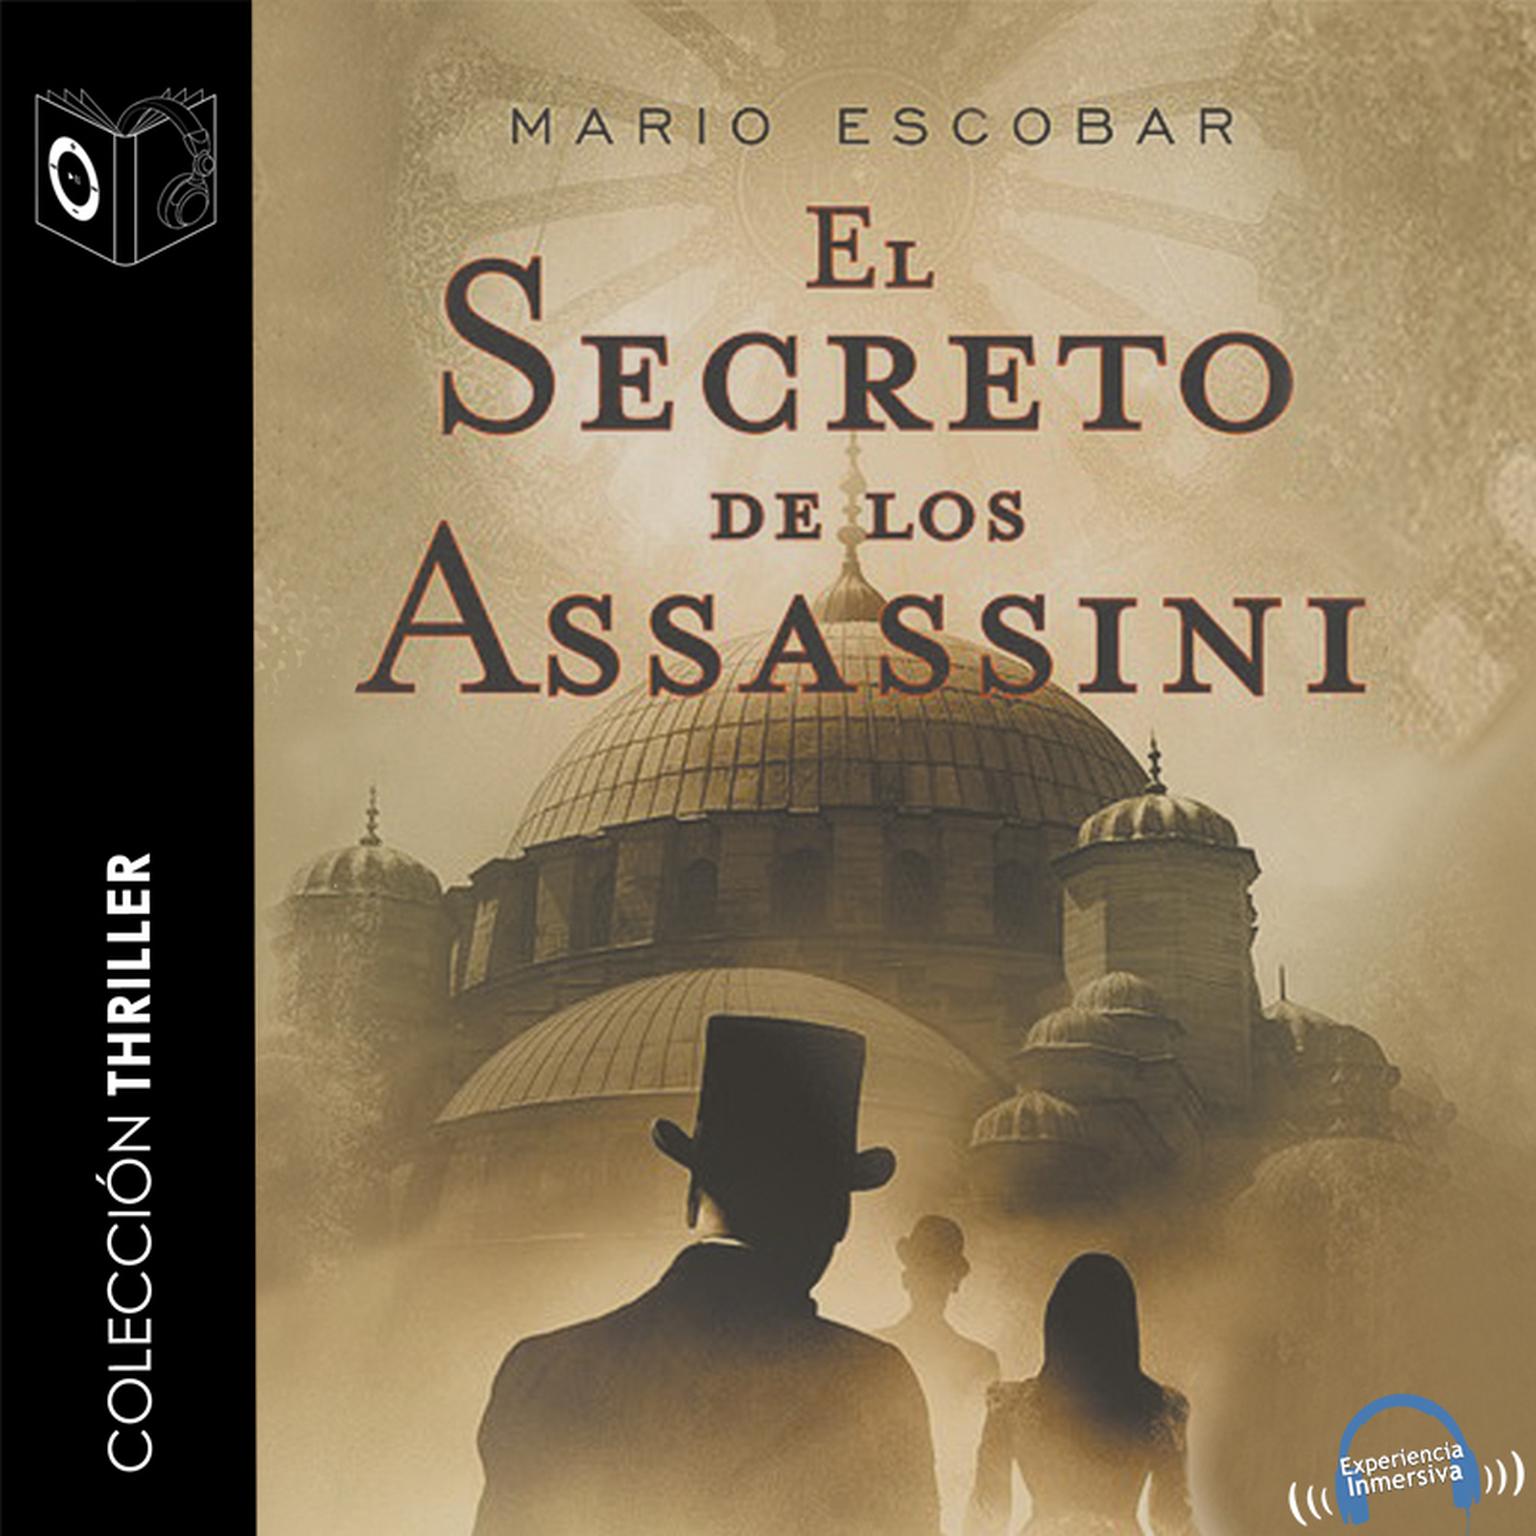 El Secreto de los Assassini Audiobook, by Mario Escobar